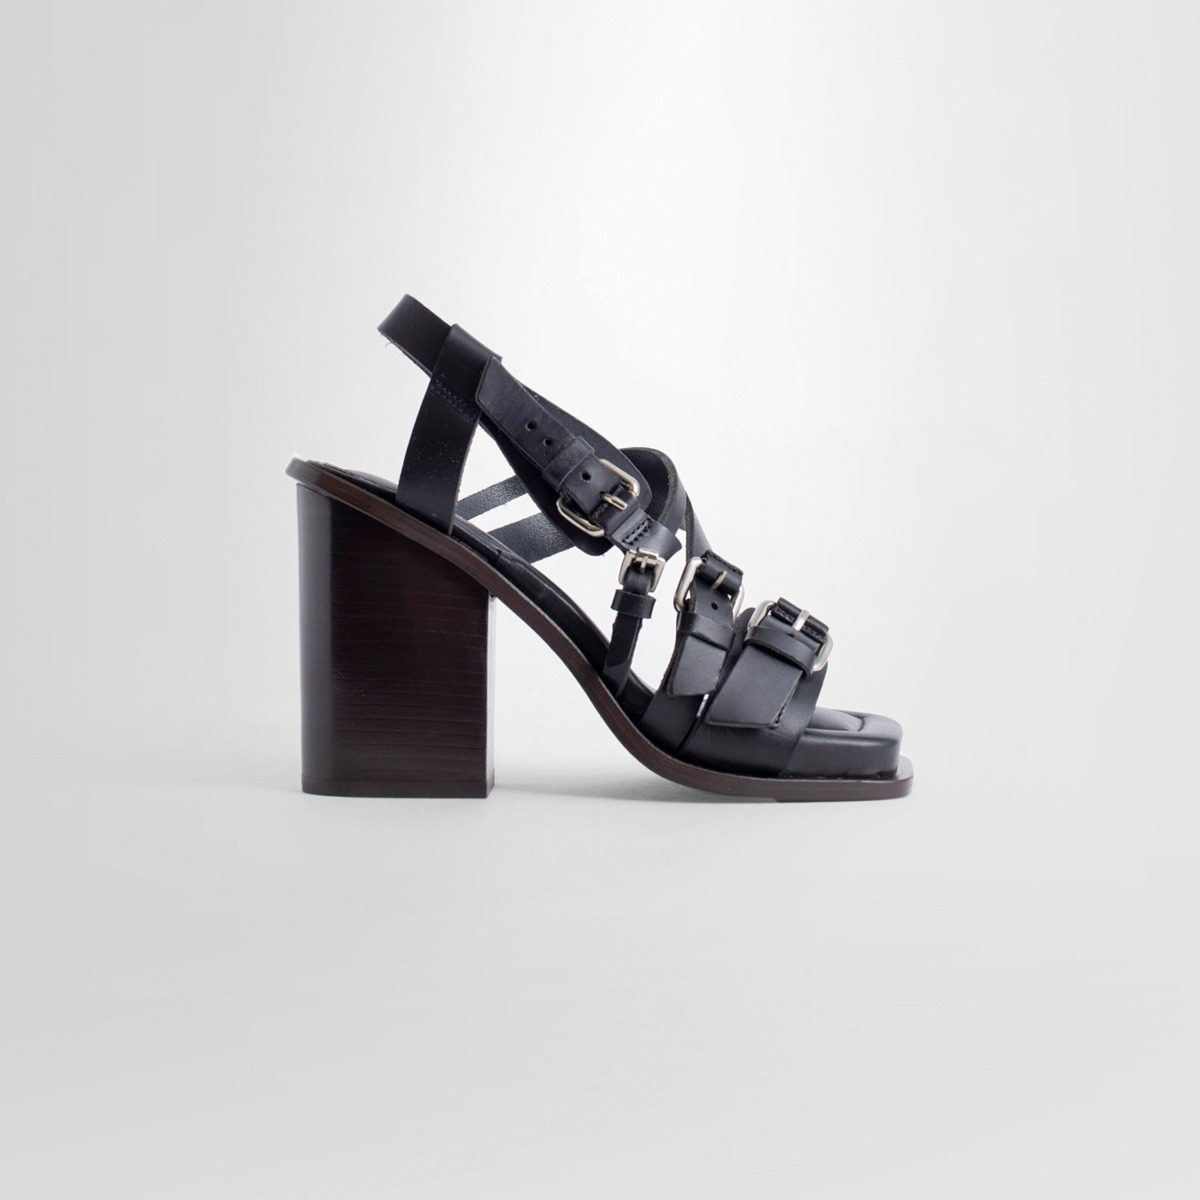 Lemaire - Women's Sandals in Black at Antonioli GOOFASH